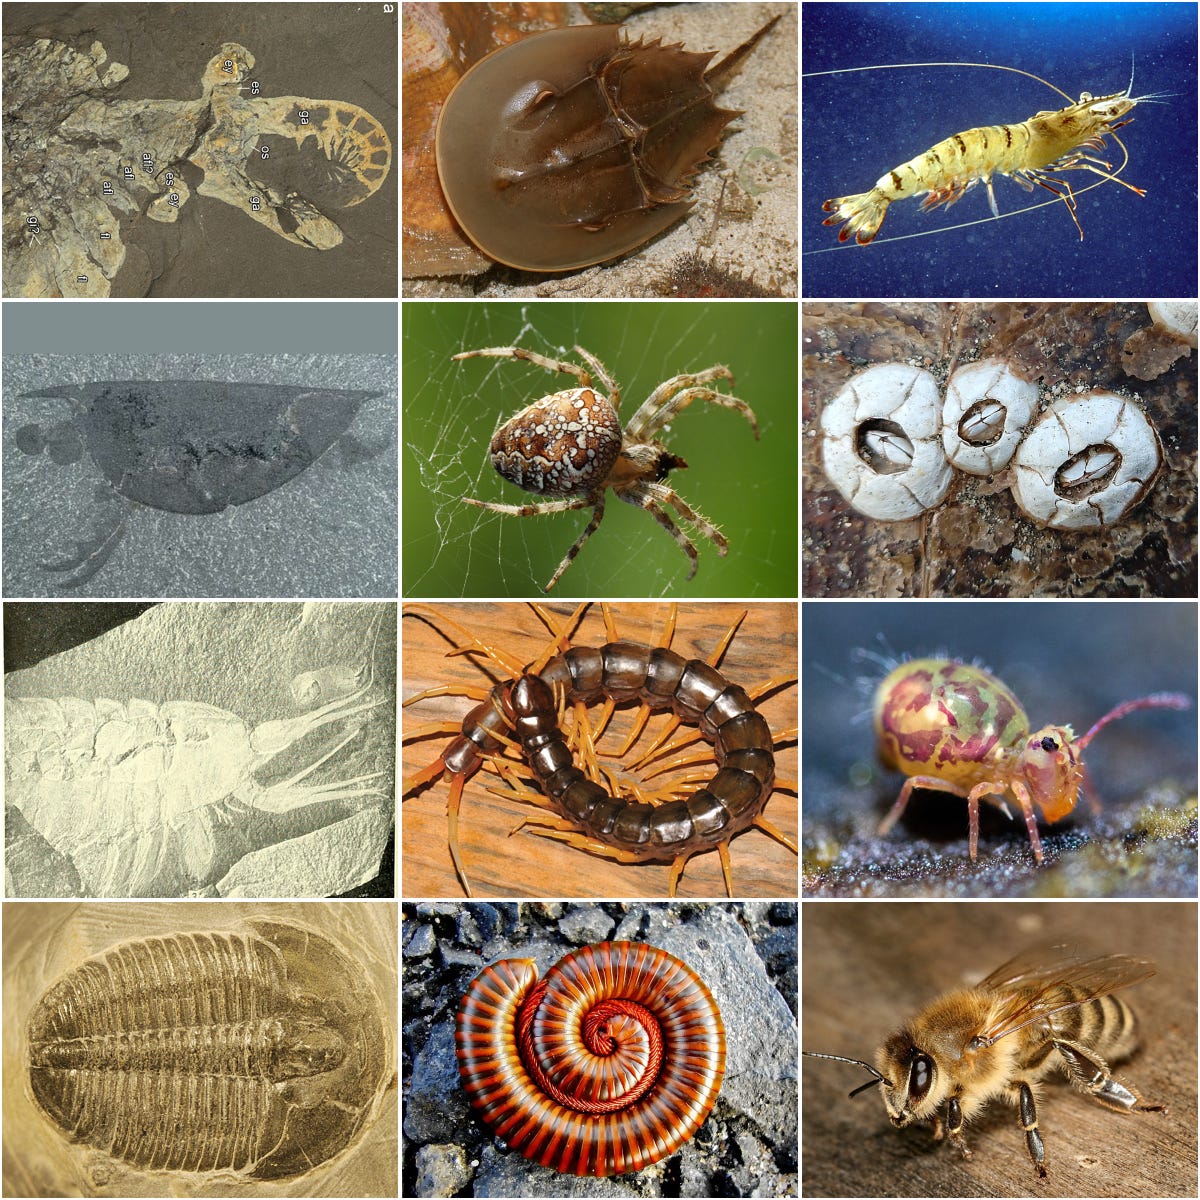 Arthropod - Wikipedia